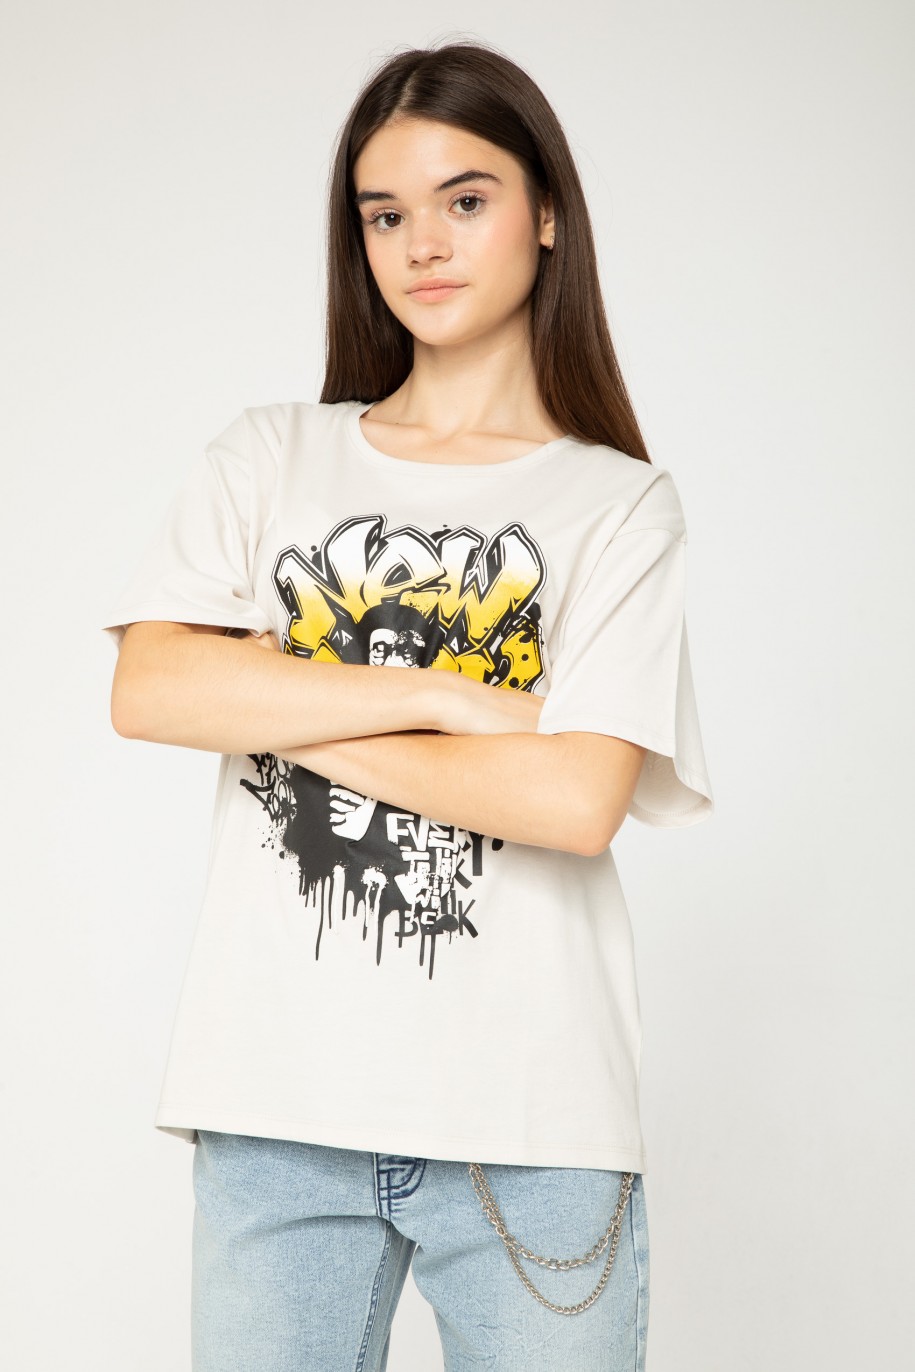 Kremowy T-shirt ovsersize z nadrukiem graffiti - 43357